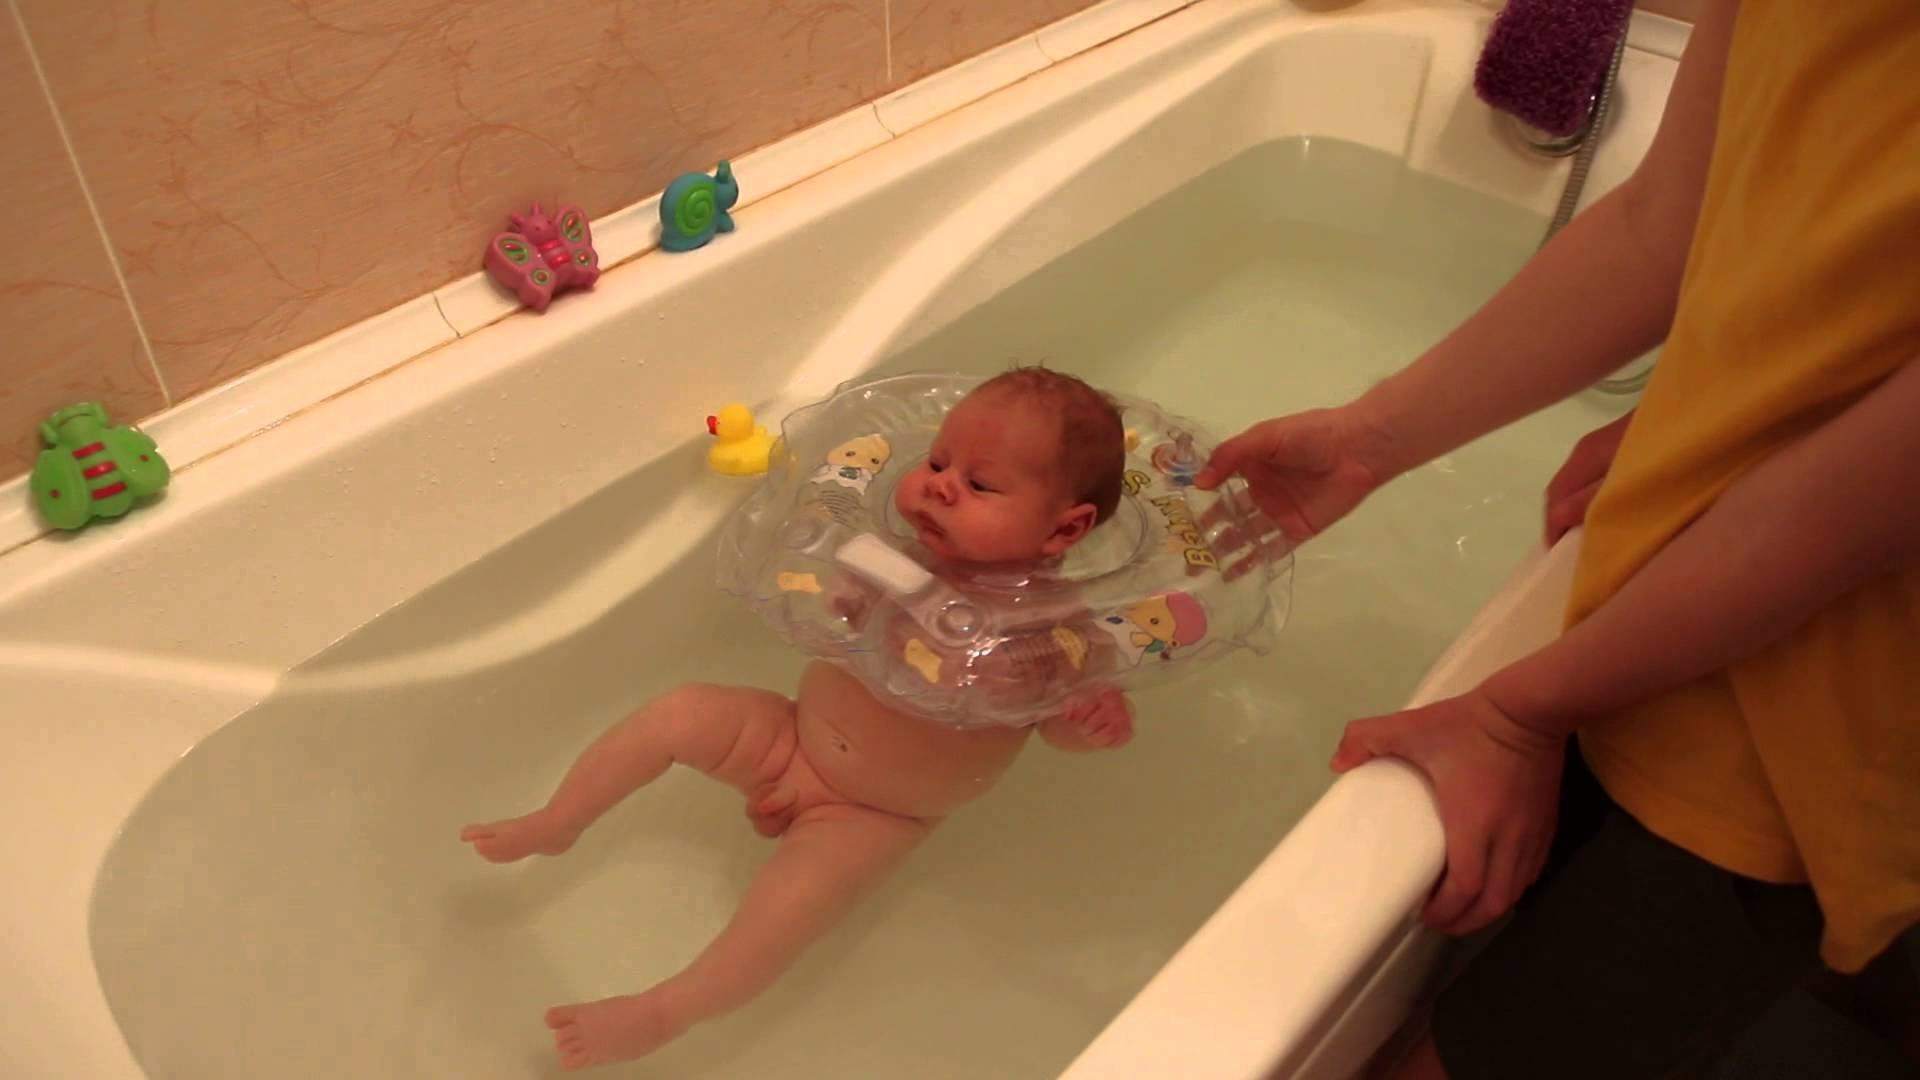 Как правильно купать новорожденного с кругом: Секреты безопасного водного досуга